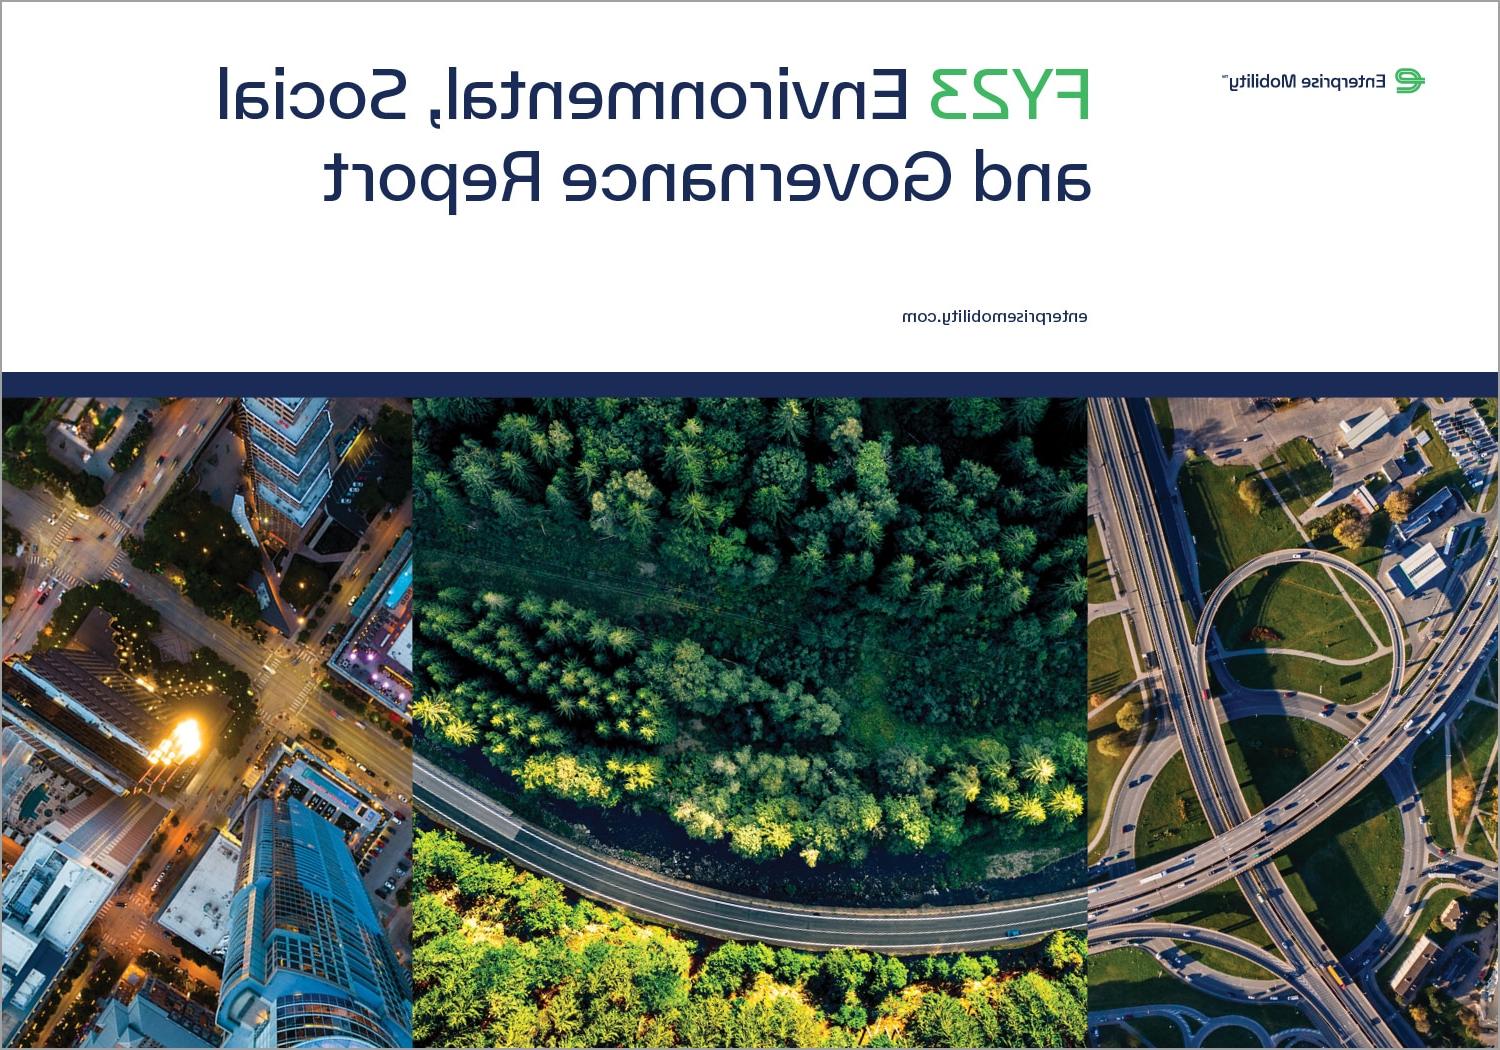 Enterprise Mobility Publishes FY23 ESG Report